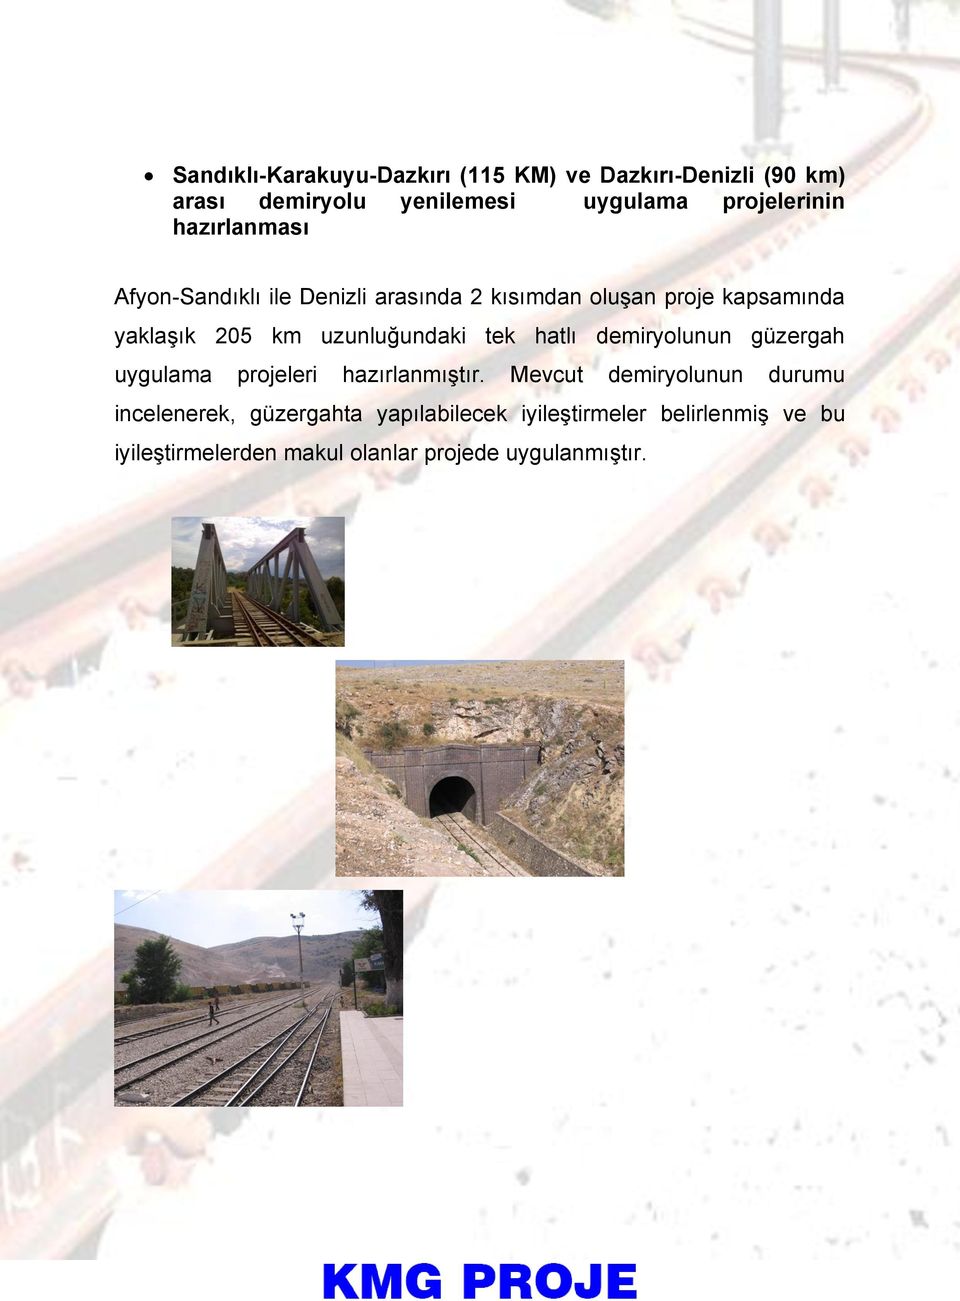 uzunluğundaki tek hatlı demiryolunun güzergah uygulama projeleri hazırlanmıştır.